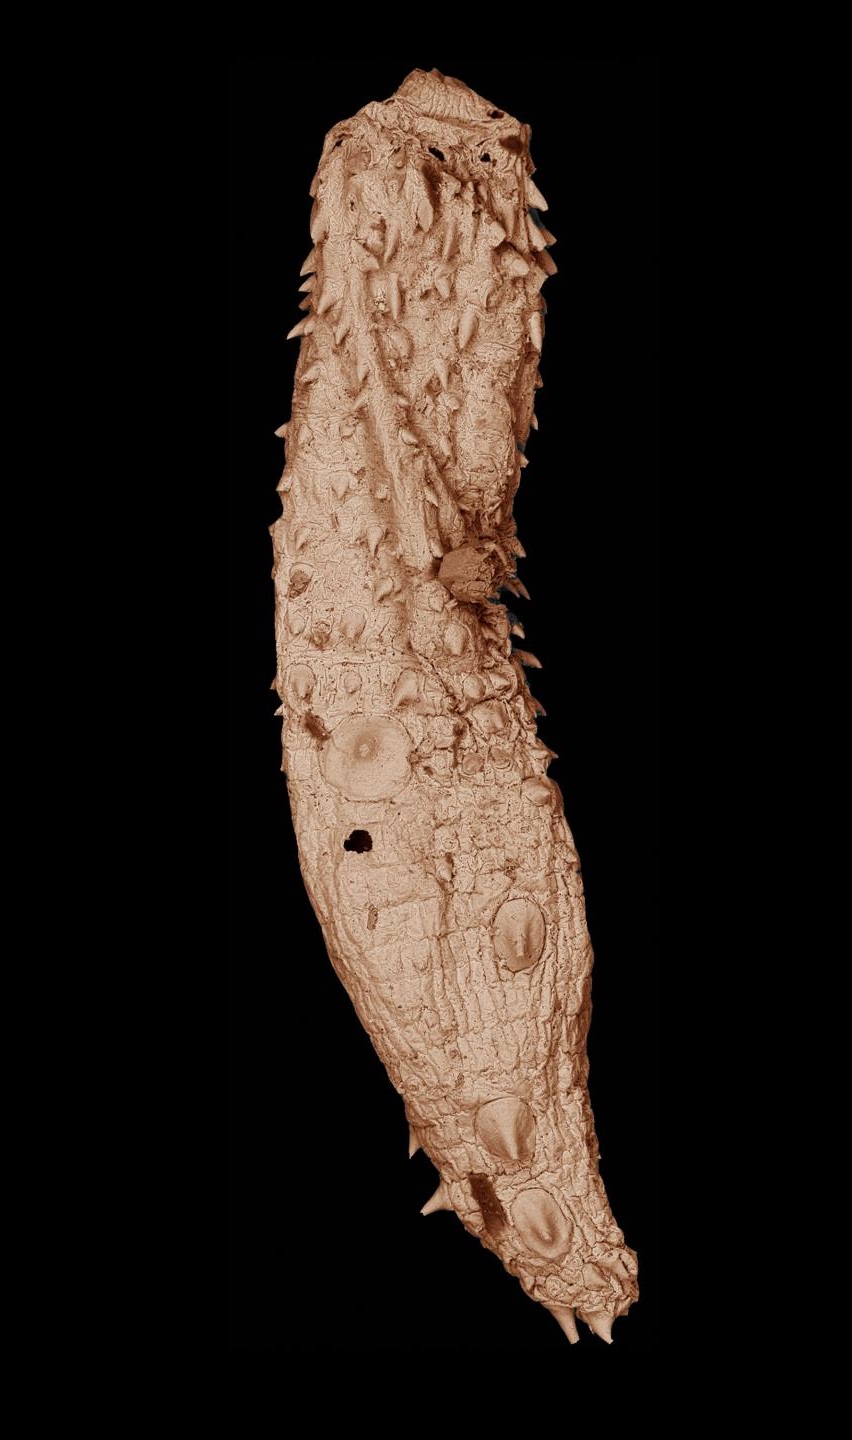 snímek fosilie Eokinorhynchus rarus pořízený elektronovým mikroskopem